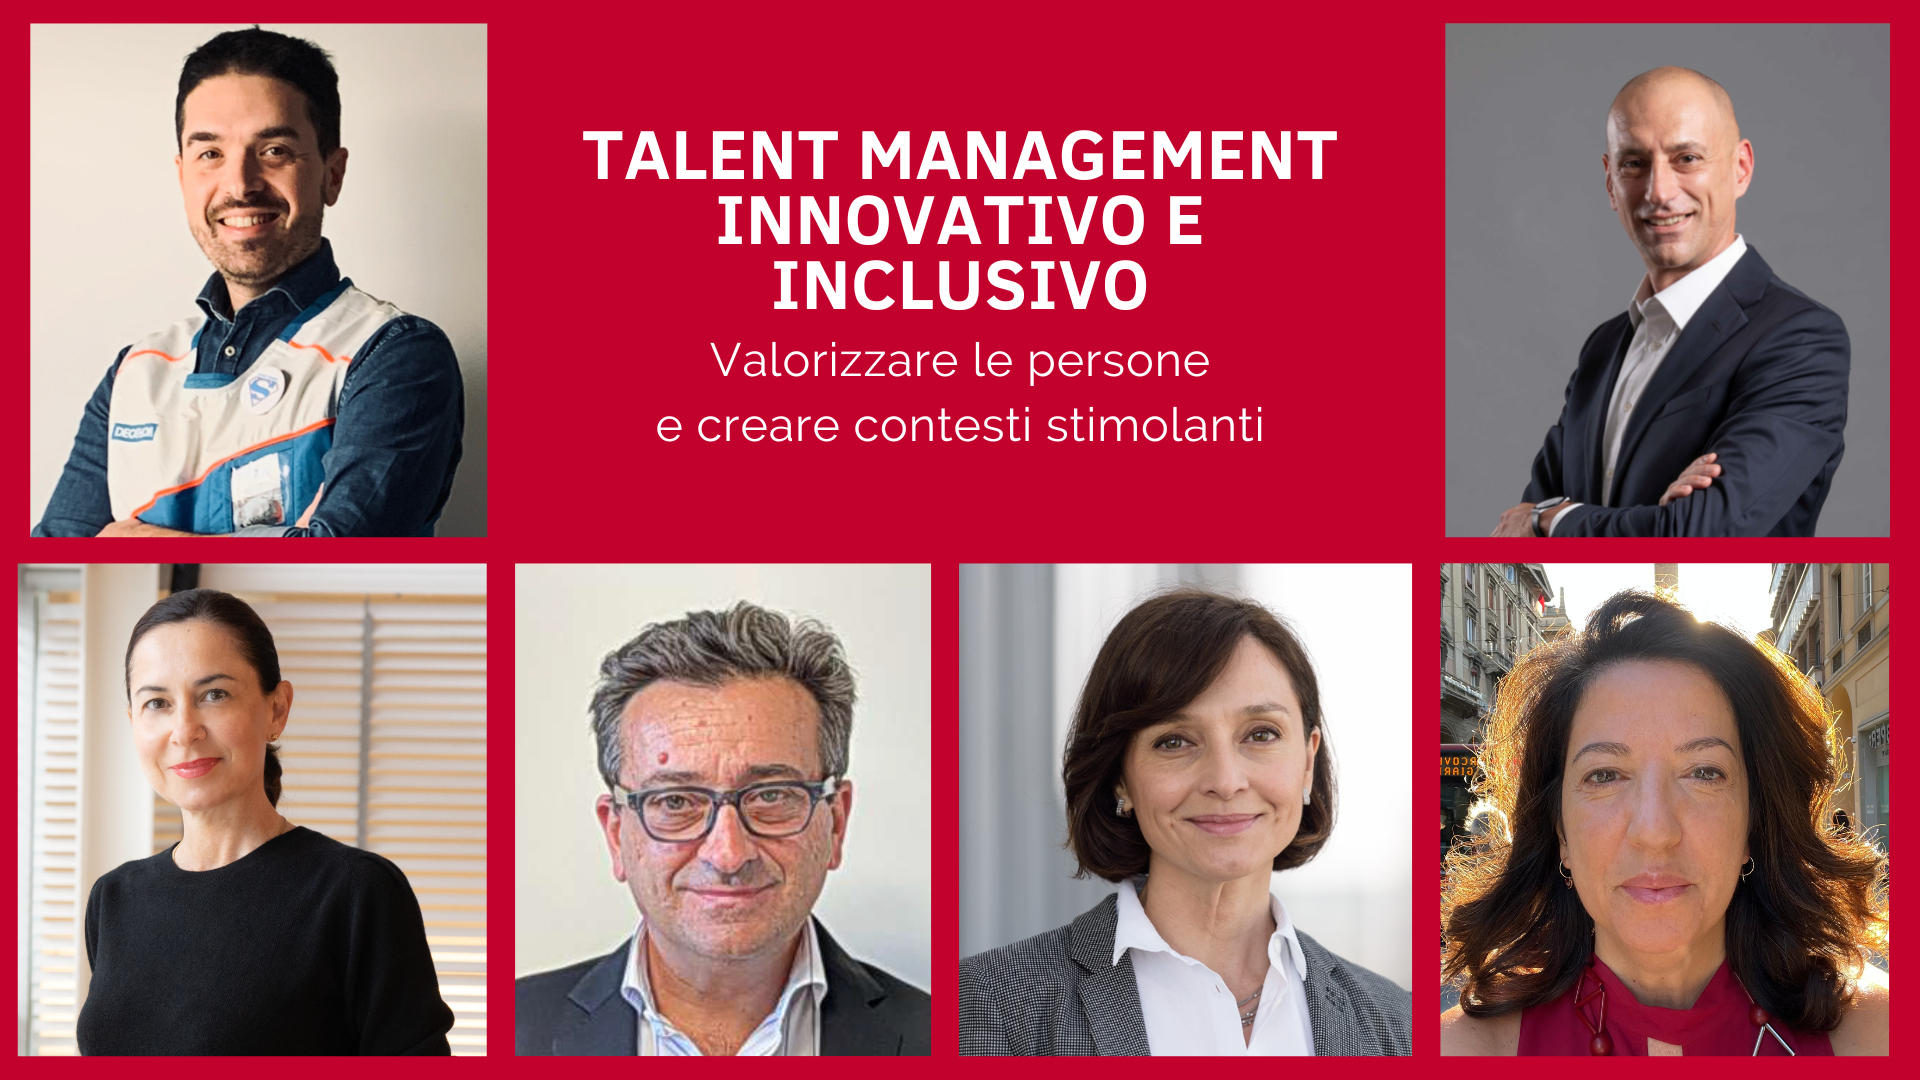 Talent management innovativo e inclusivo. Valorizzare le persone e creare contesti stimolanti